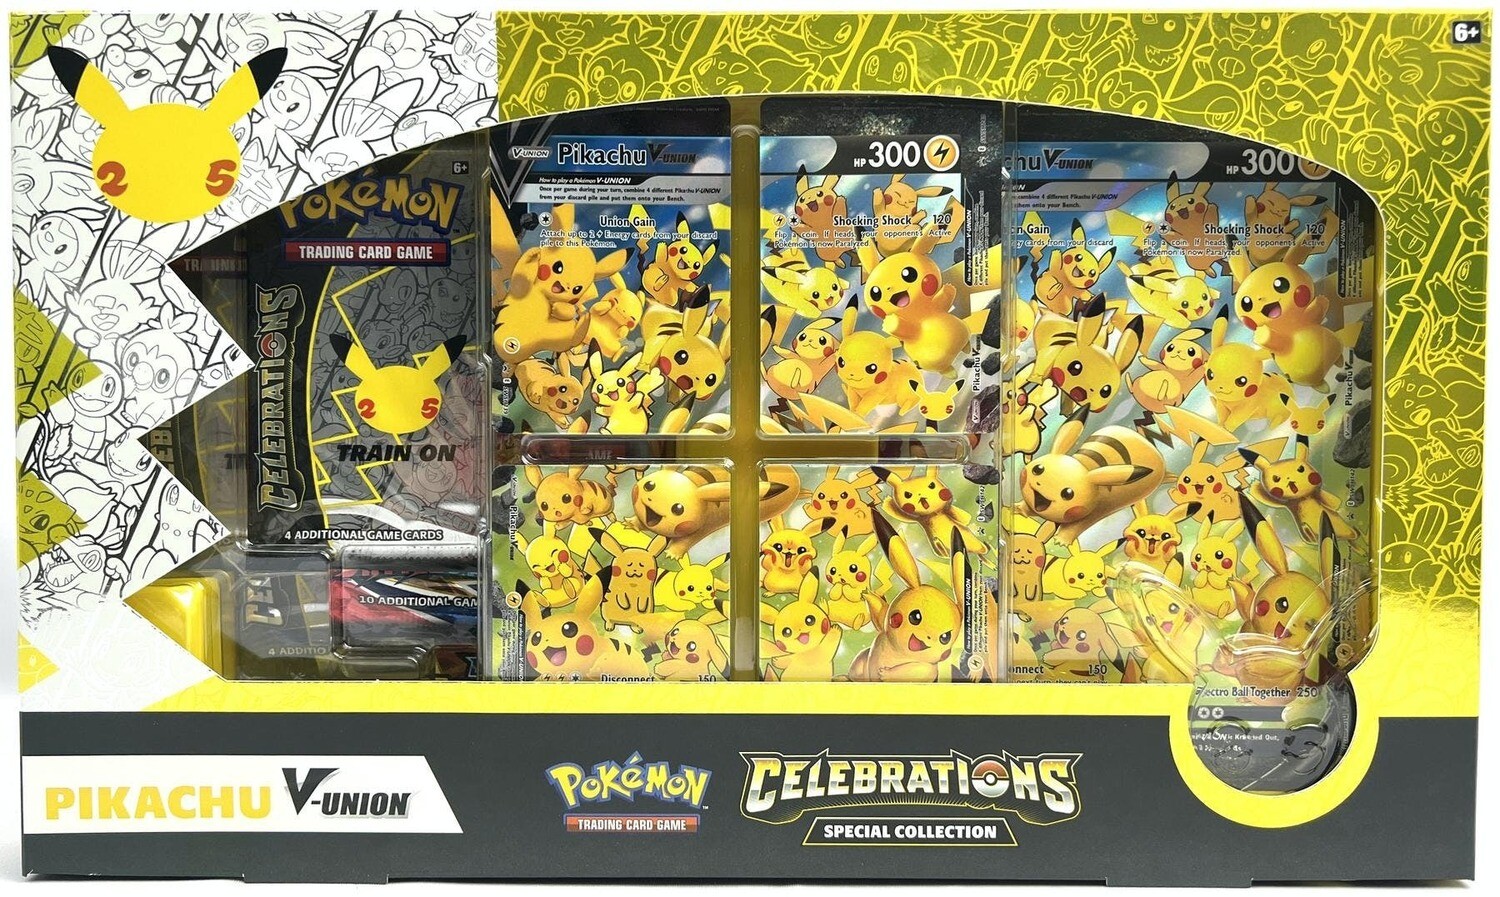 Pokemon Celebration Pikachu V Union